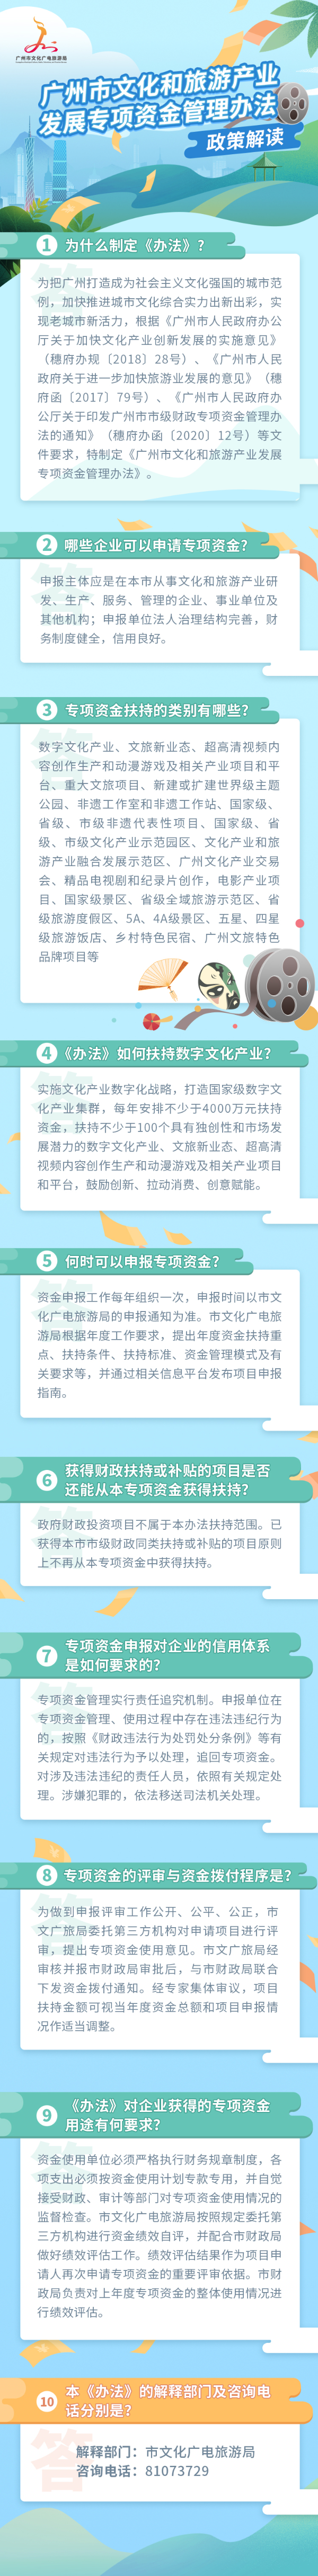 图文解读广州市文化和旅游产业发展专项资金管理办法.jpg